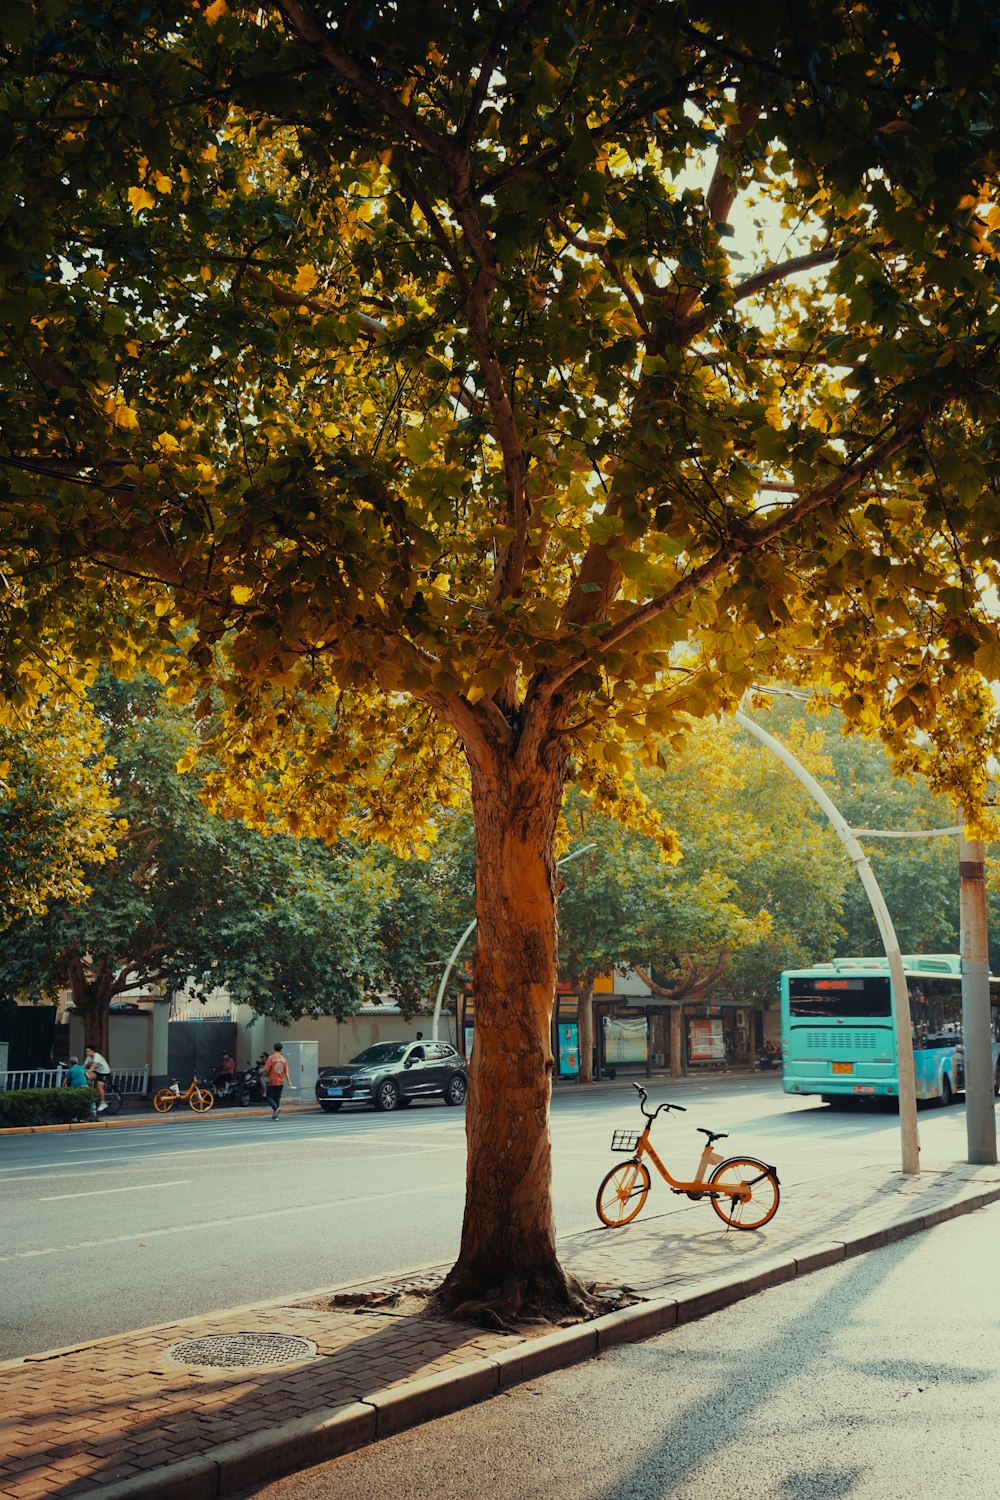 길가의 나무 아래에 주차된 자전거